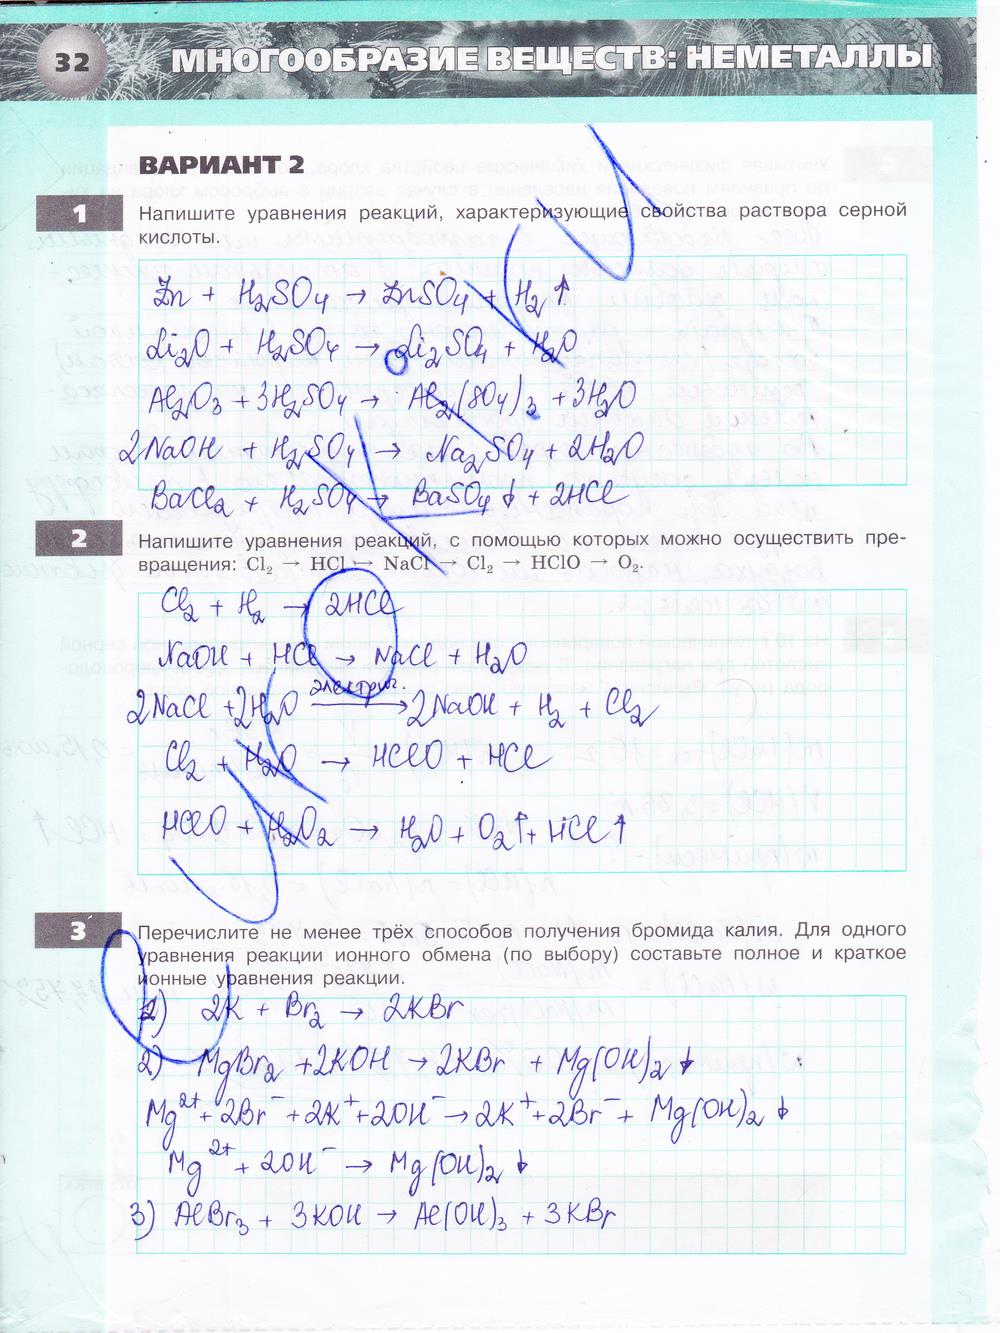 гдз 9 класс тетрадь-экзаменатор страница 32 химия Бобылева, Бирюлина